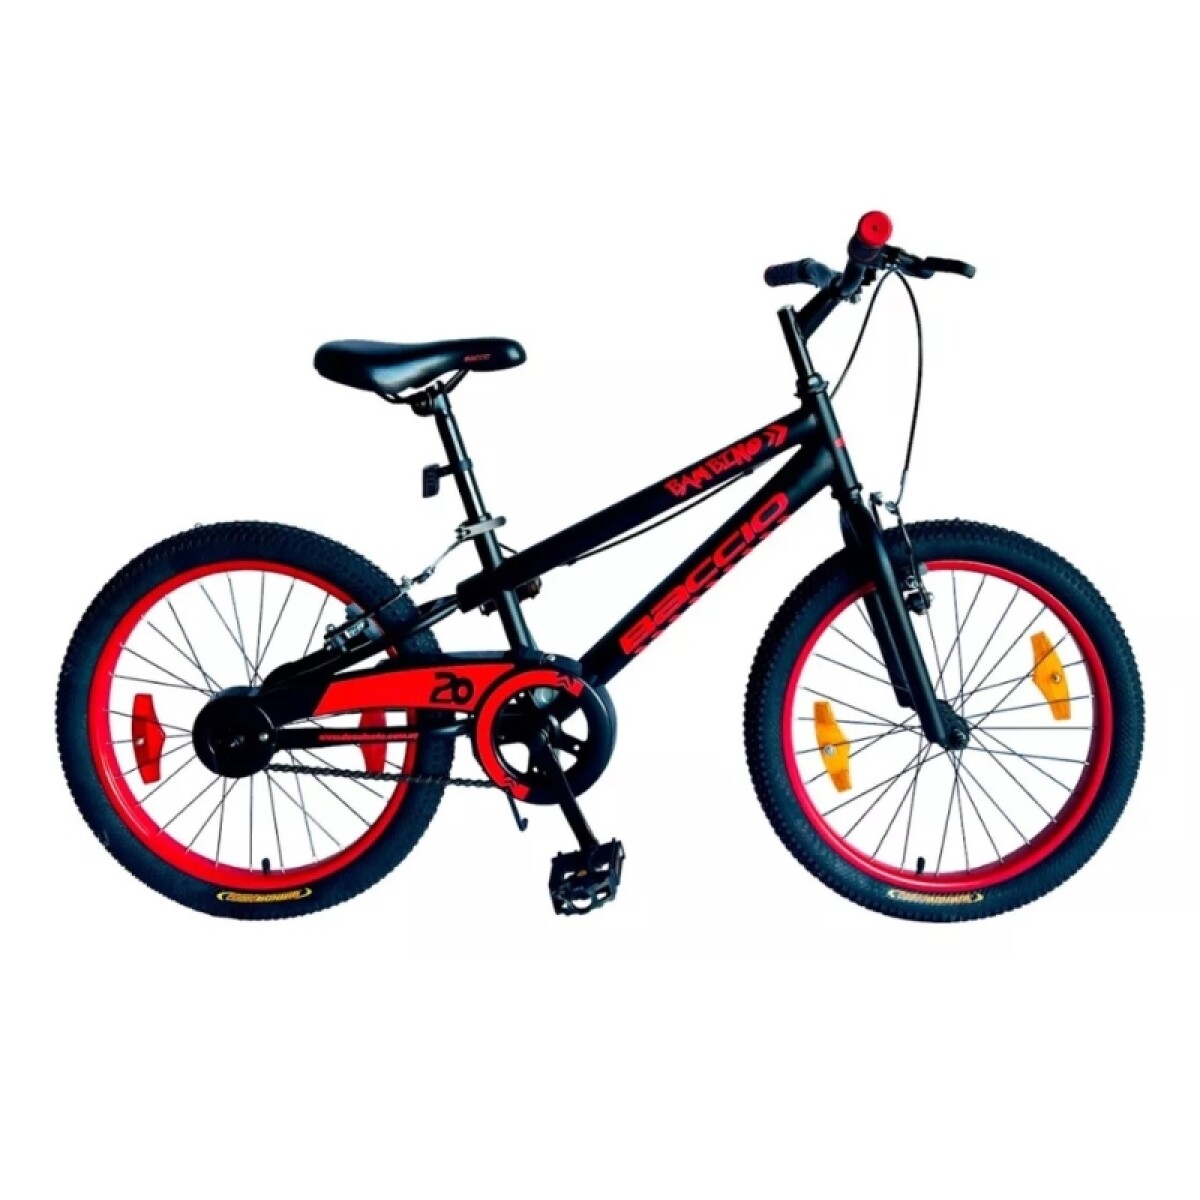 Bicicleta Baccio R.20 Niño Mtb Bambino (std) - Negro/rojo 